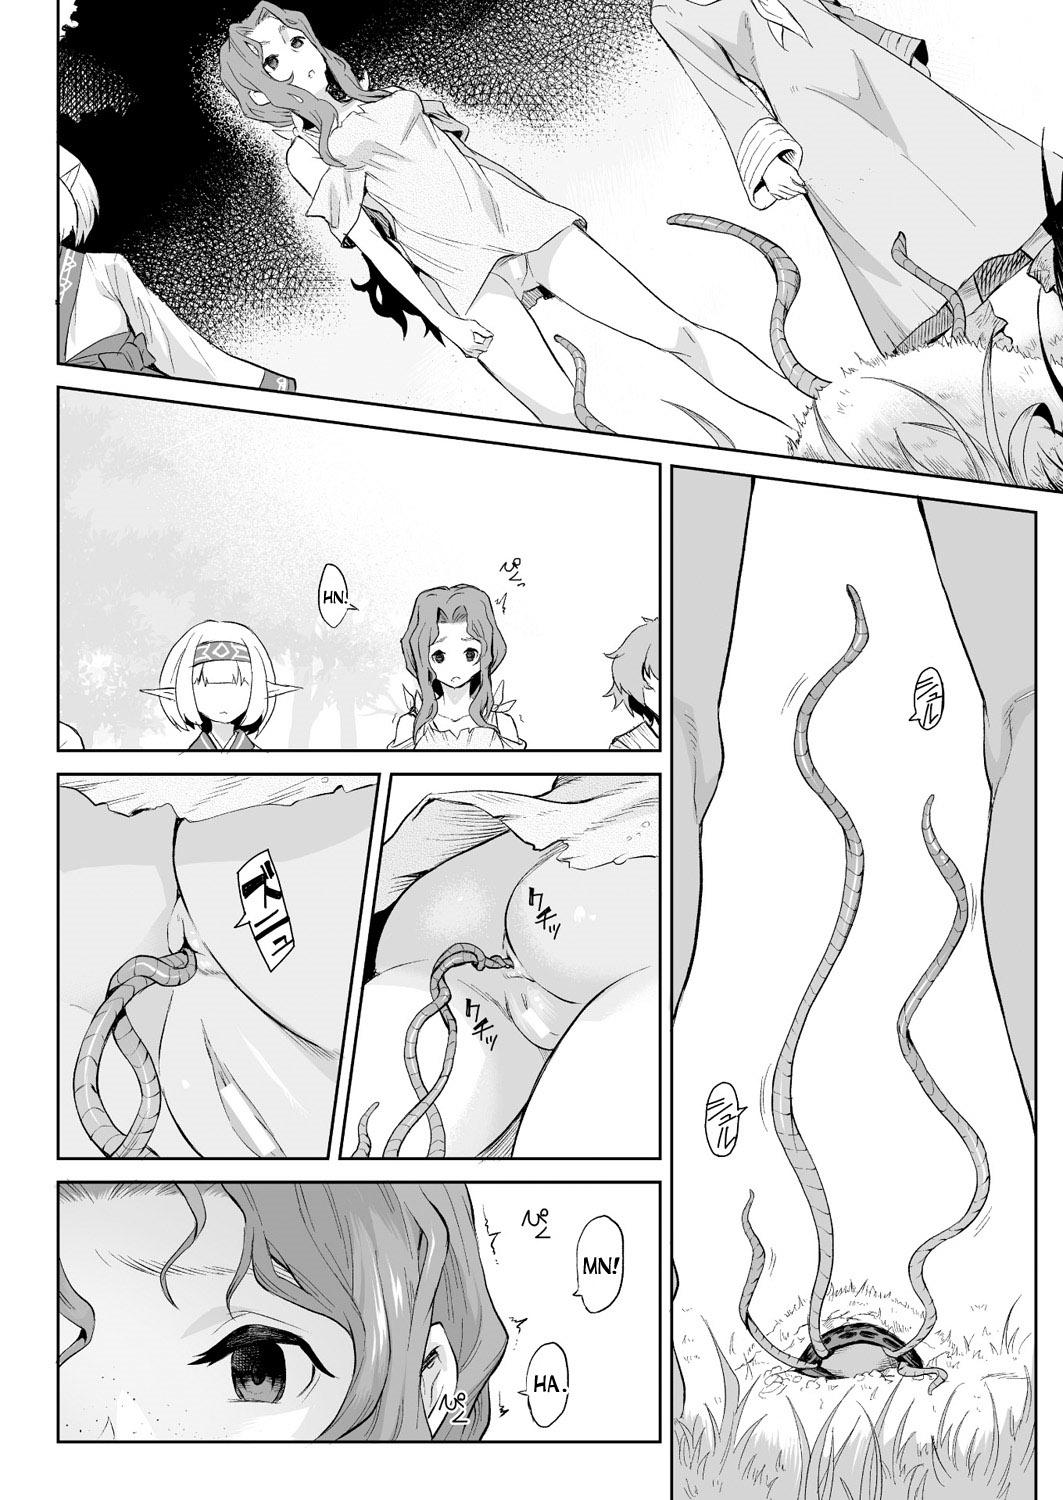 Stripper Kiseiju Vol. 1 | Parasite Tree Vol. 1 Amateurs - Page 4